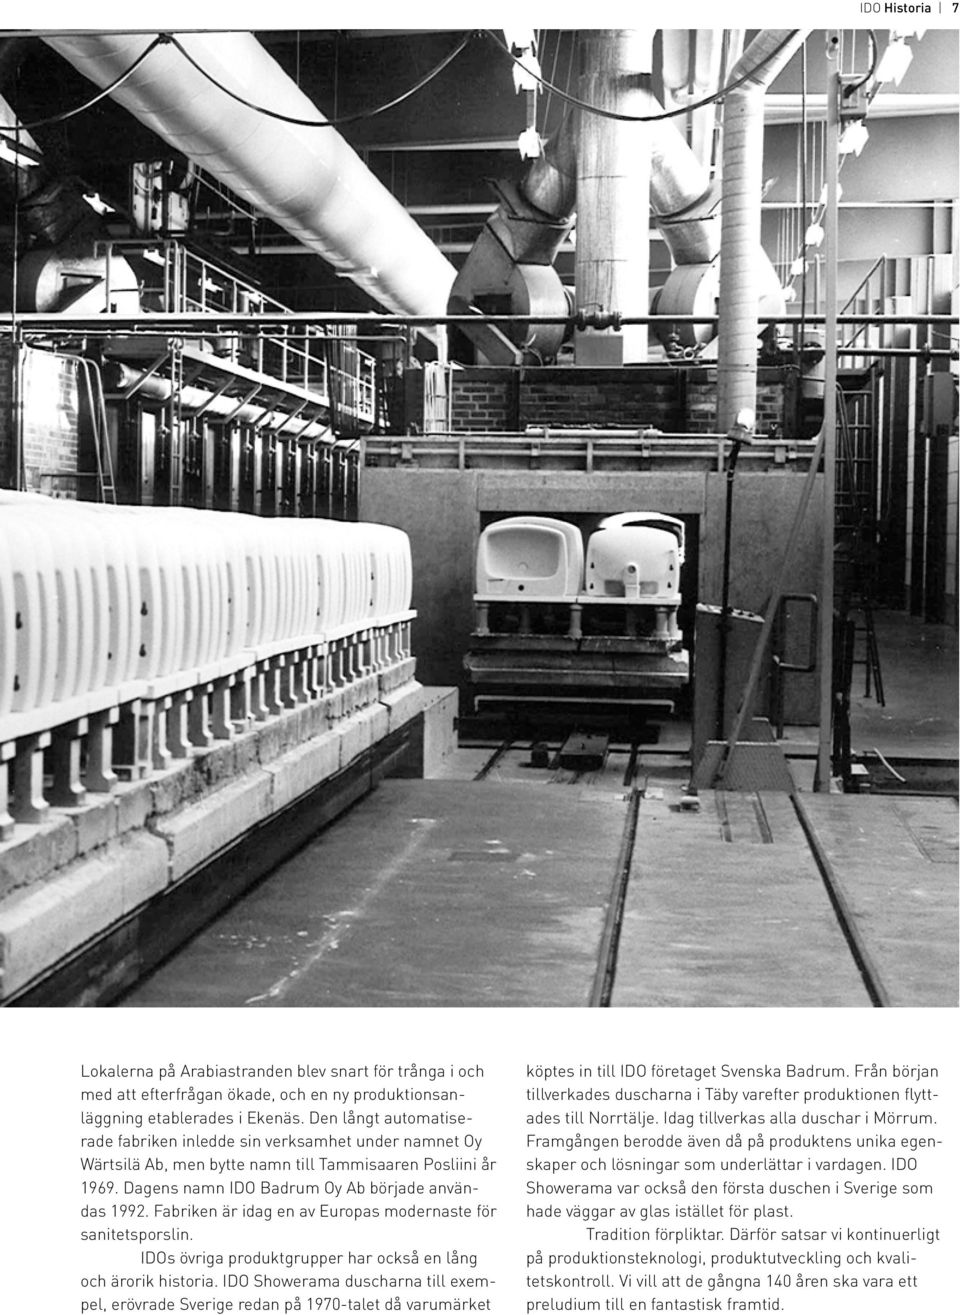 Fabriken är idag en av Europas modernaste för sanitetsporslin. IDOs övriga produktgrupper har också en lång och ärorik historia.